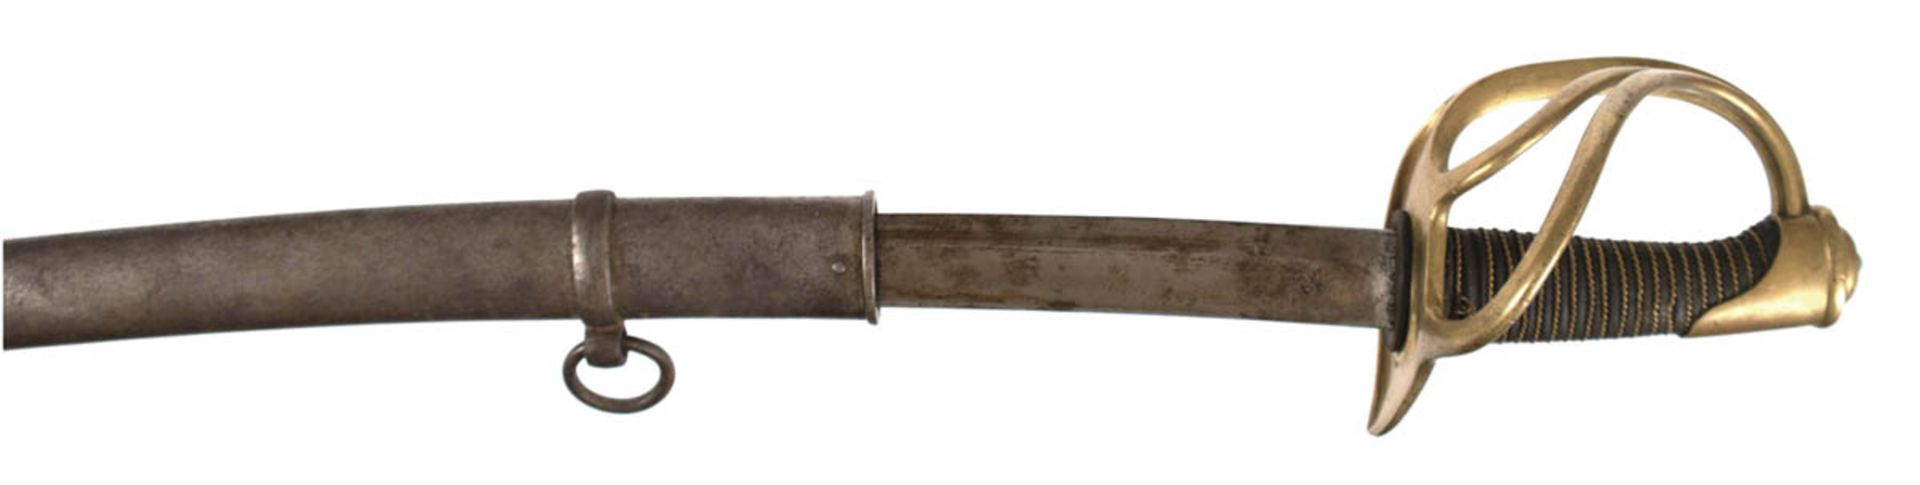 Französischer Säbel, um 1900, einschneidige, gebogene, beidseitig gekehlte Klinge,punziertes